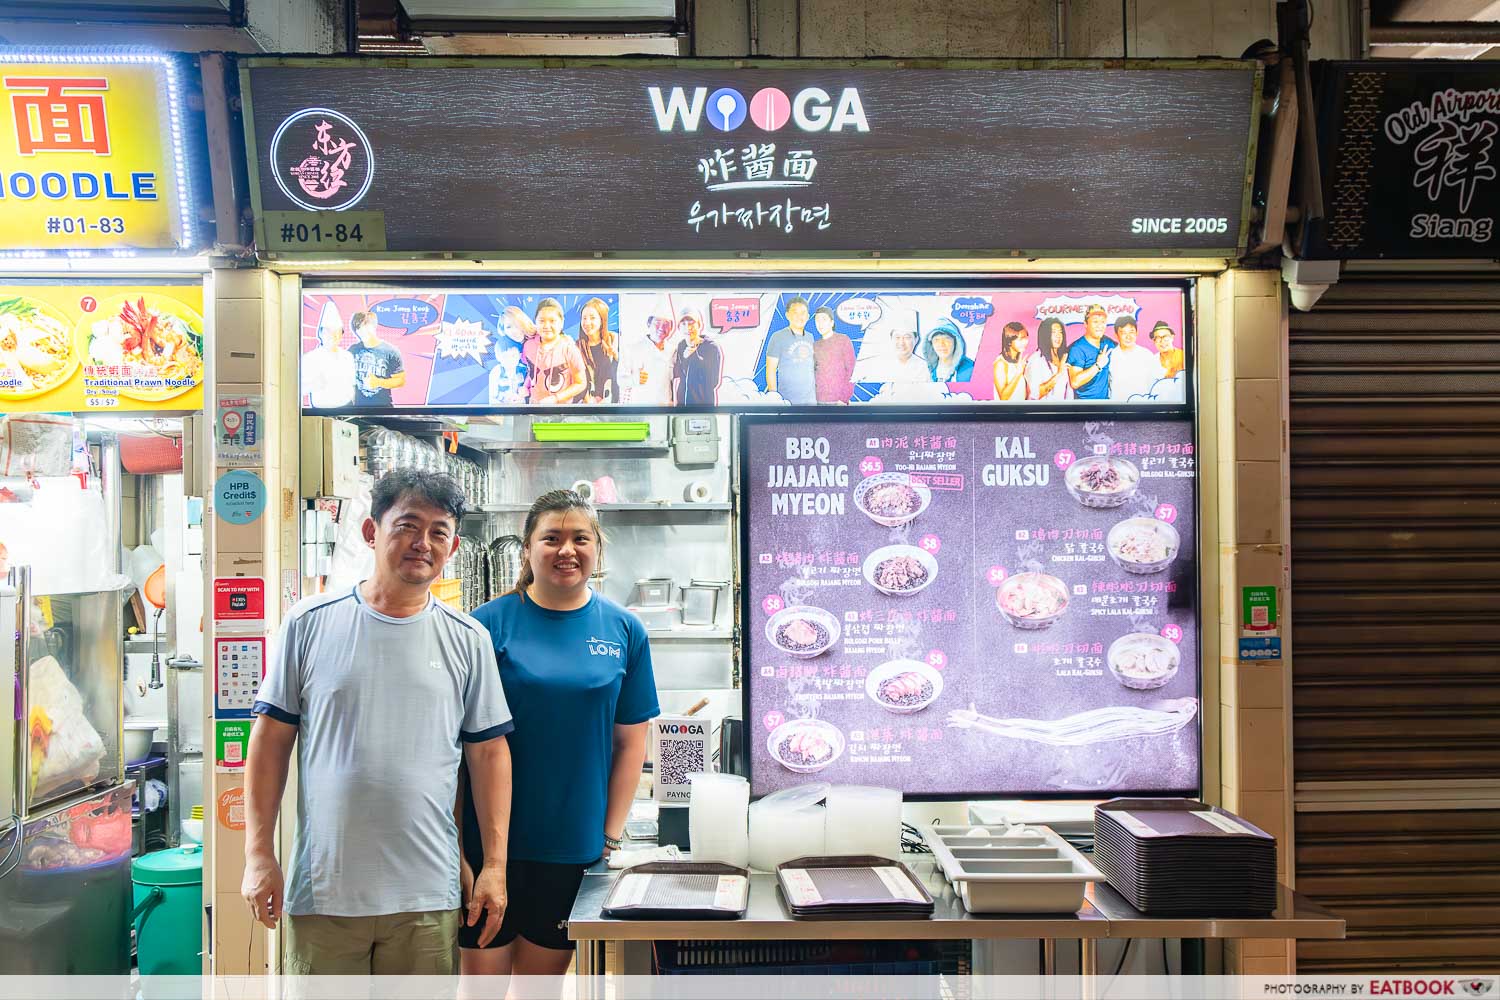 Wooga-Bimbowl-Kalguksu-wooga-jjajang-storefront (4)